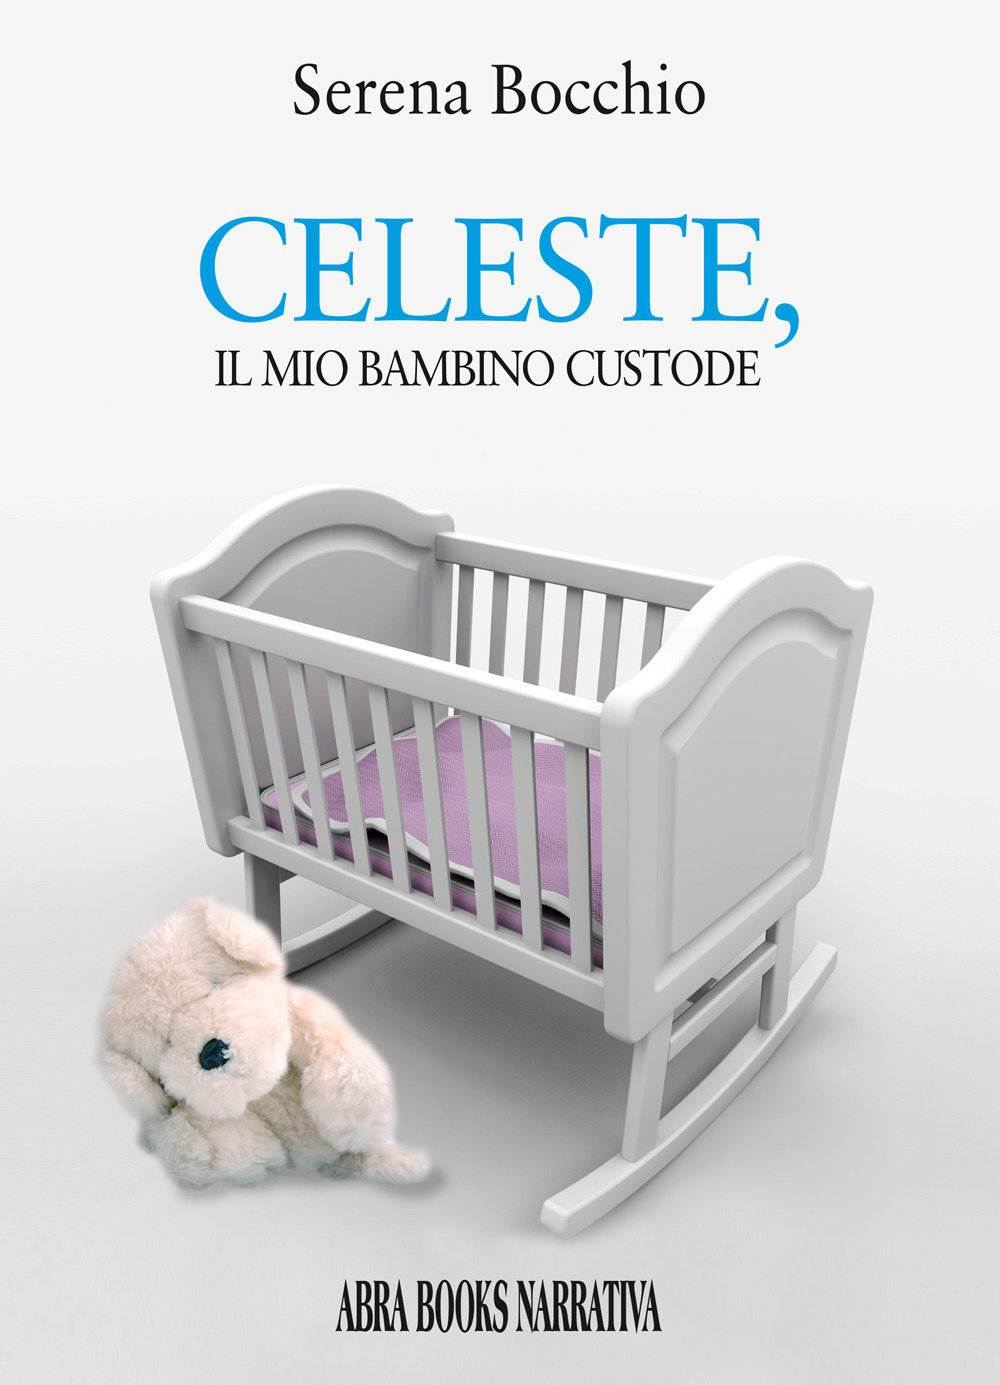 Celeste, il mio bambino custode